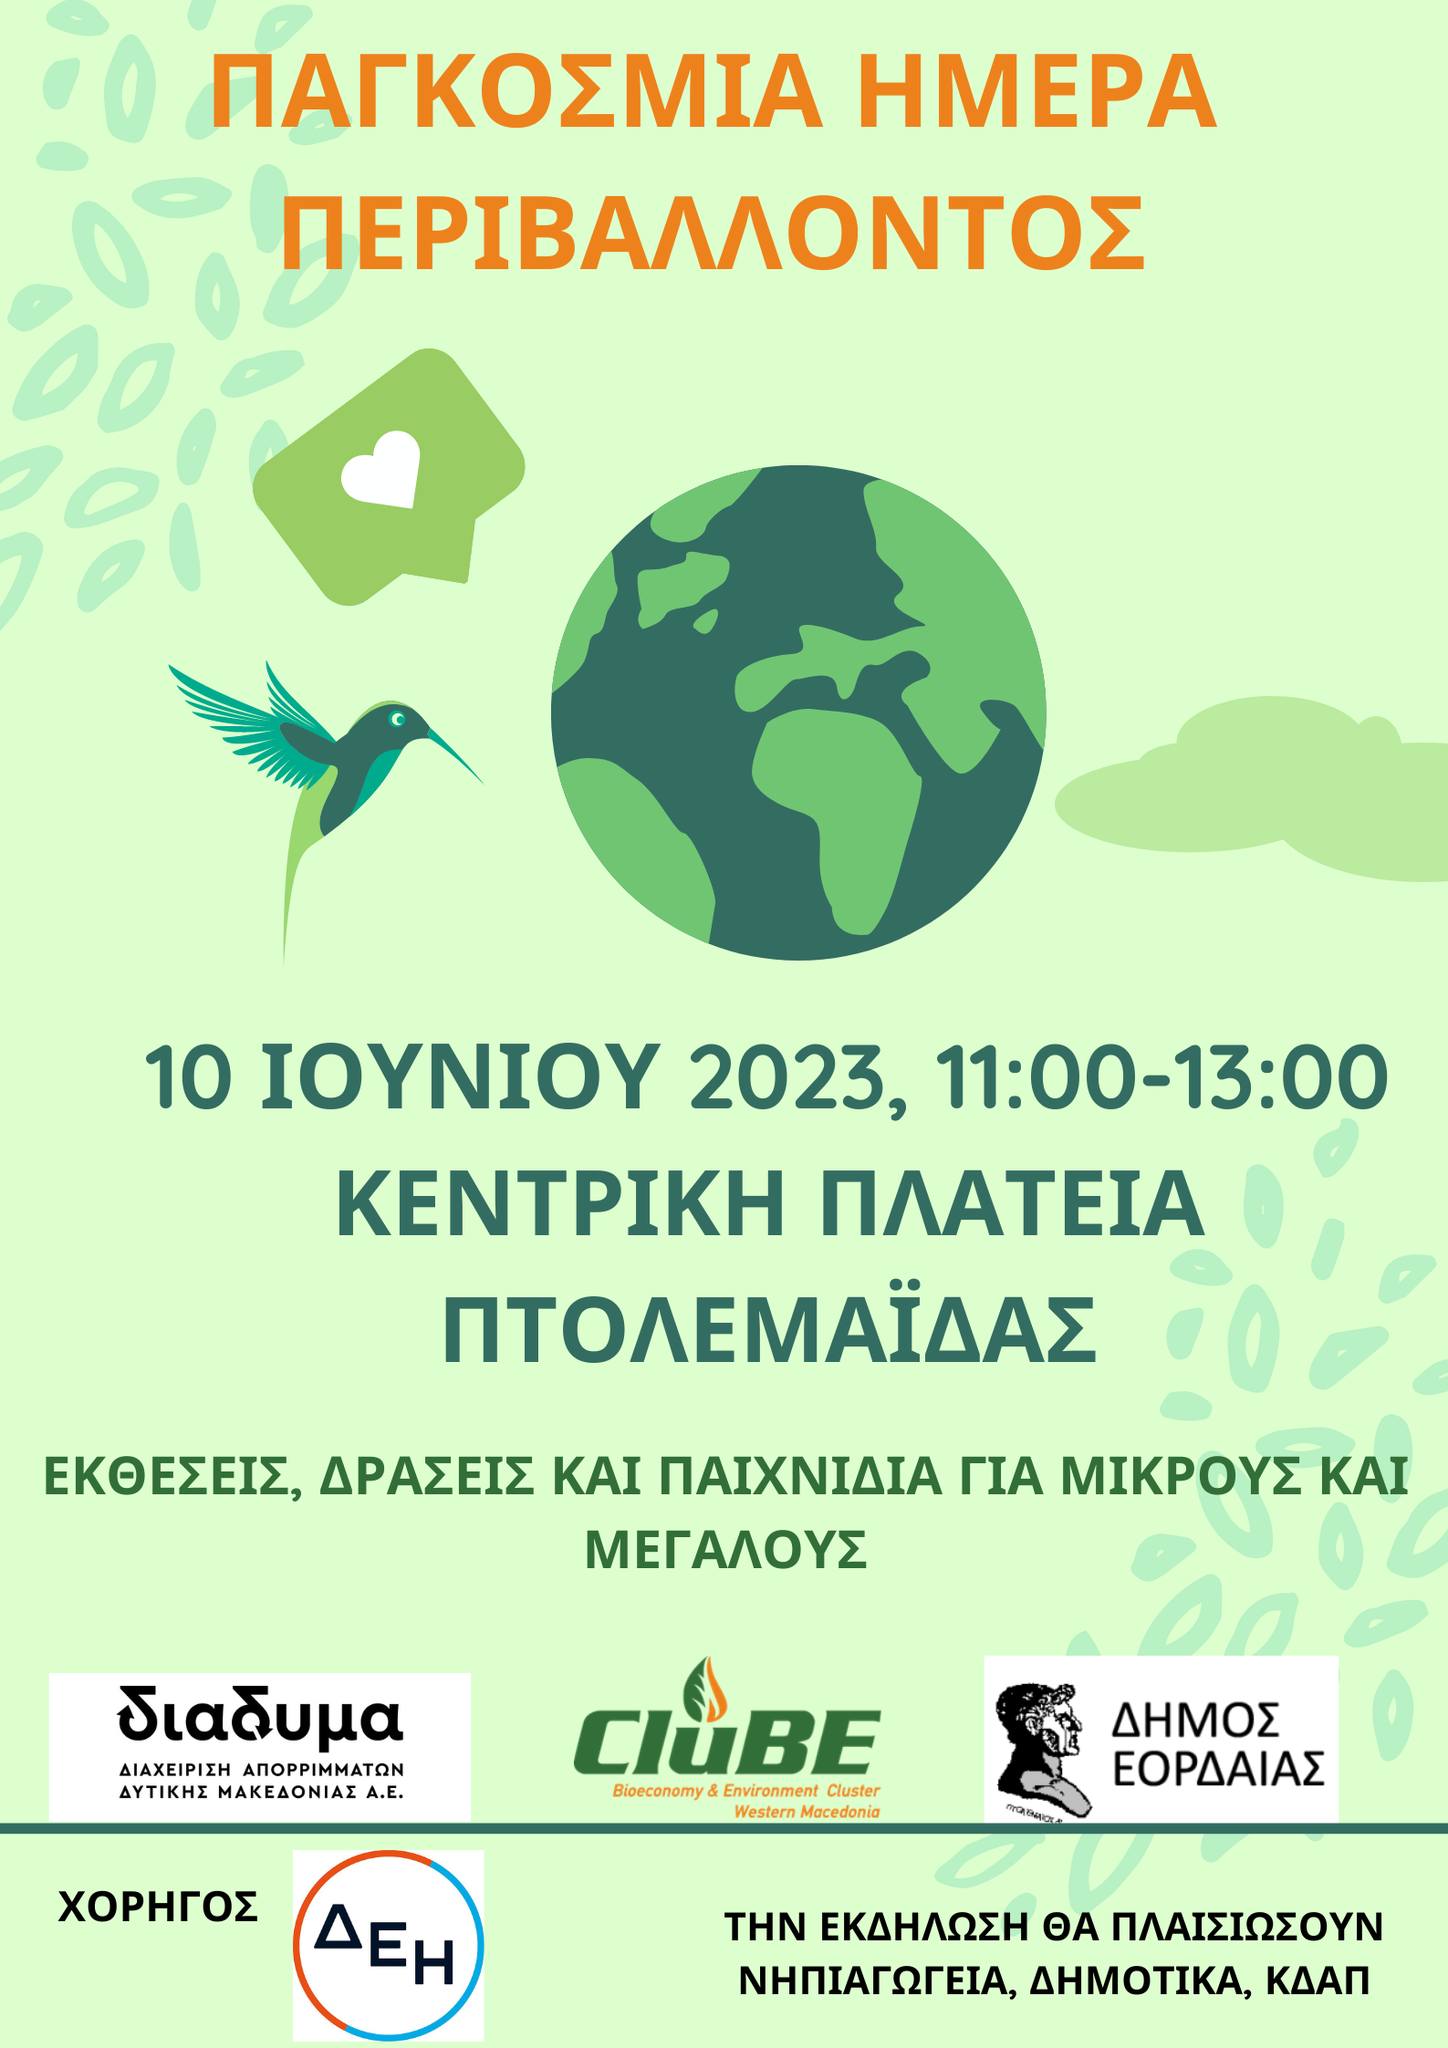 Παγκόσμια ημέρα Περιβάλλοντος. Δράσεις για μικρούς και μεγάλους - Κεντρική πλατεία Πτολεμαΐδας. Σάββατο 10 Ιουνίου 2023, 11:00 - 13-00